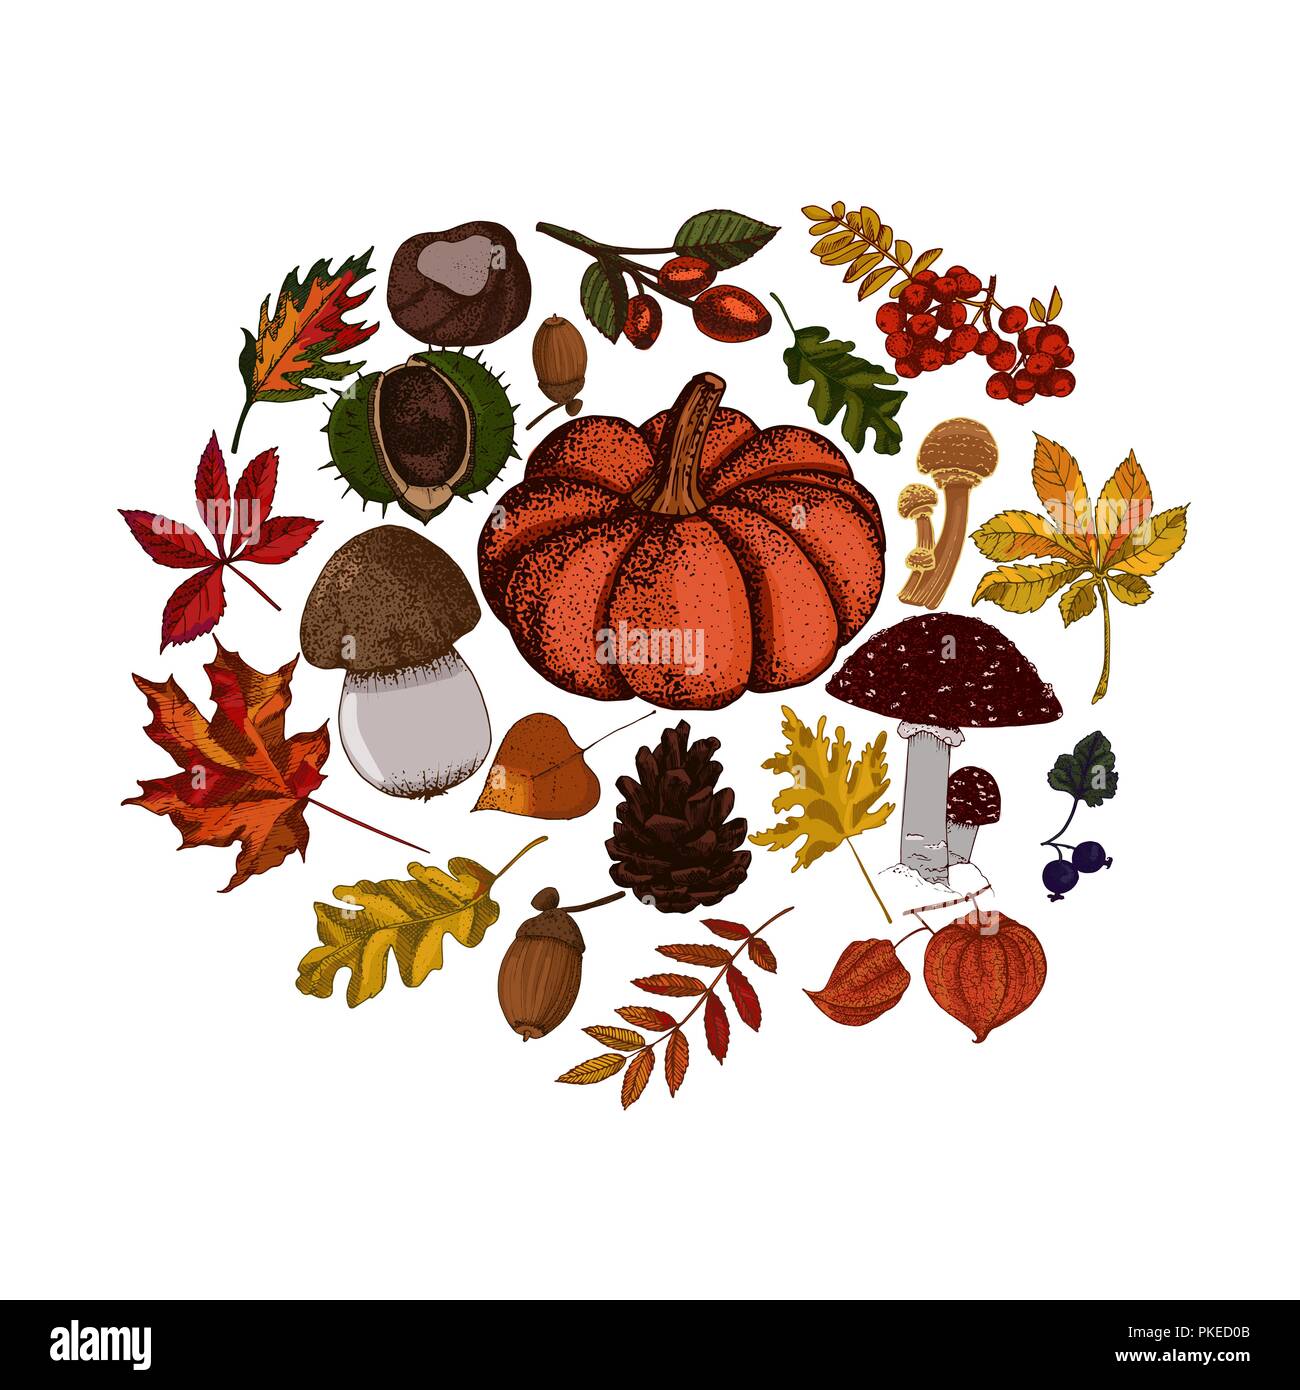 Herbst botanische Skizzen auf weißem Hintergrund. Kürbis, Pilze, goldene und rote Blätter vektor Kreis. Stock Vektor